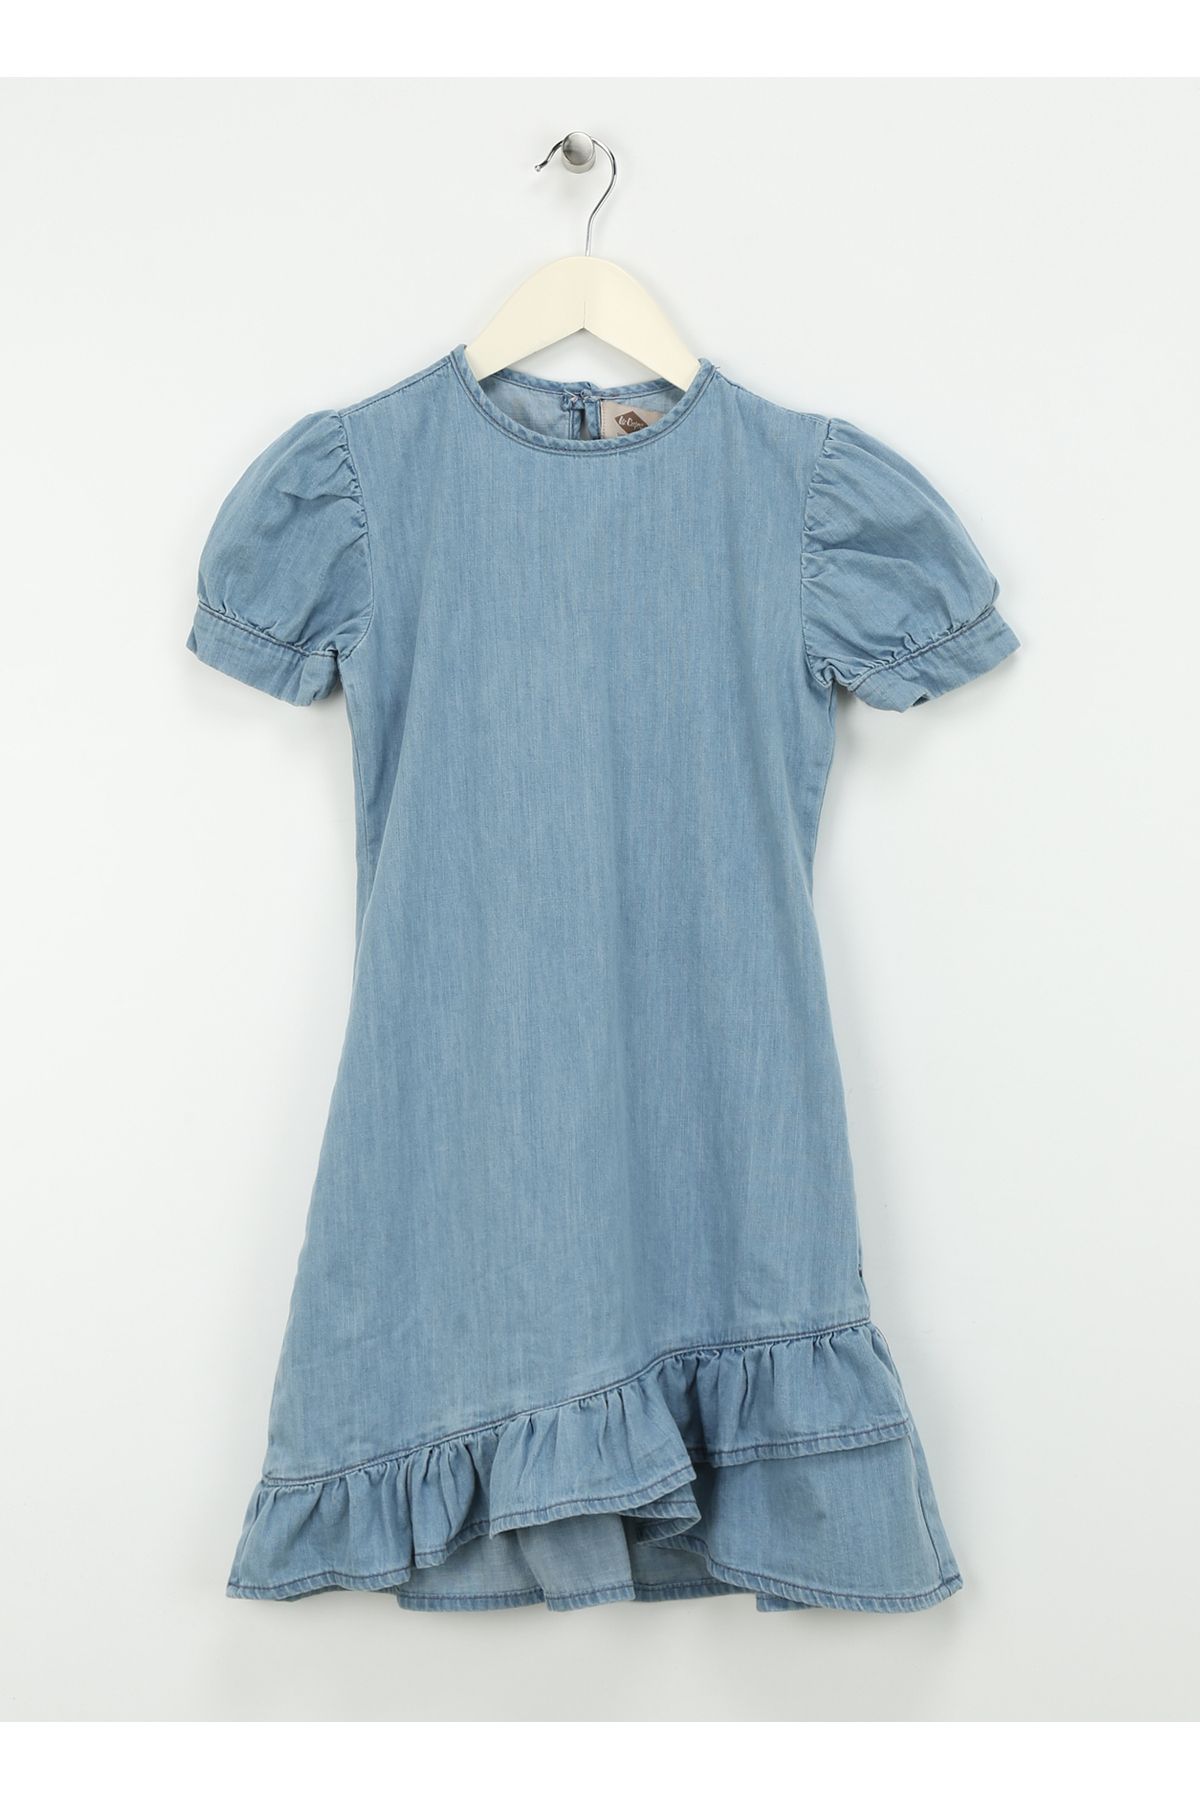 Lee Cooper Düz Açık Mavi Kadın Standart Elbise 242 LCG 144003 CORDELLA 1 LIGHT BLU